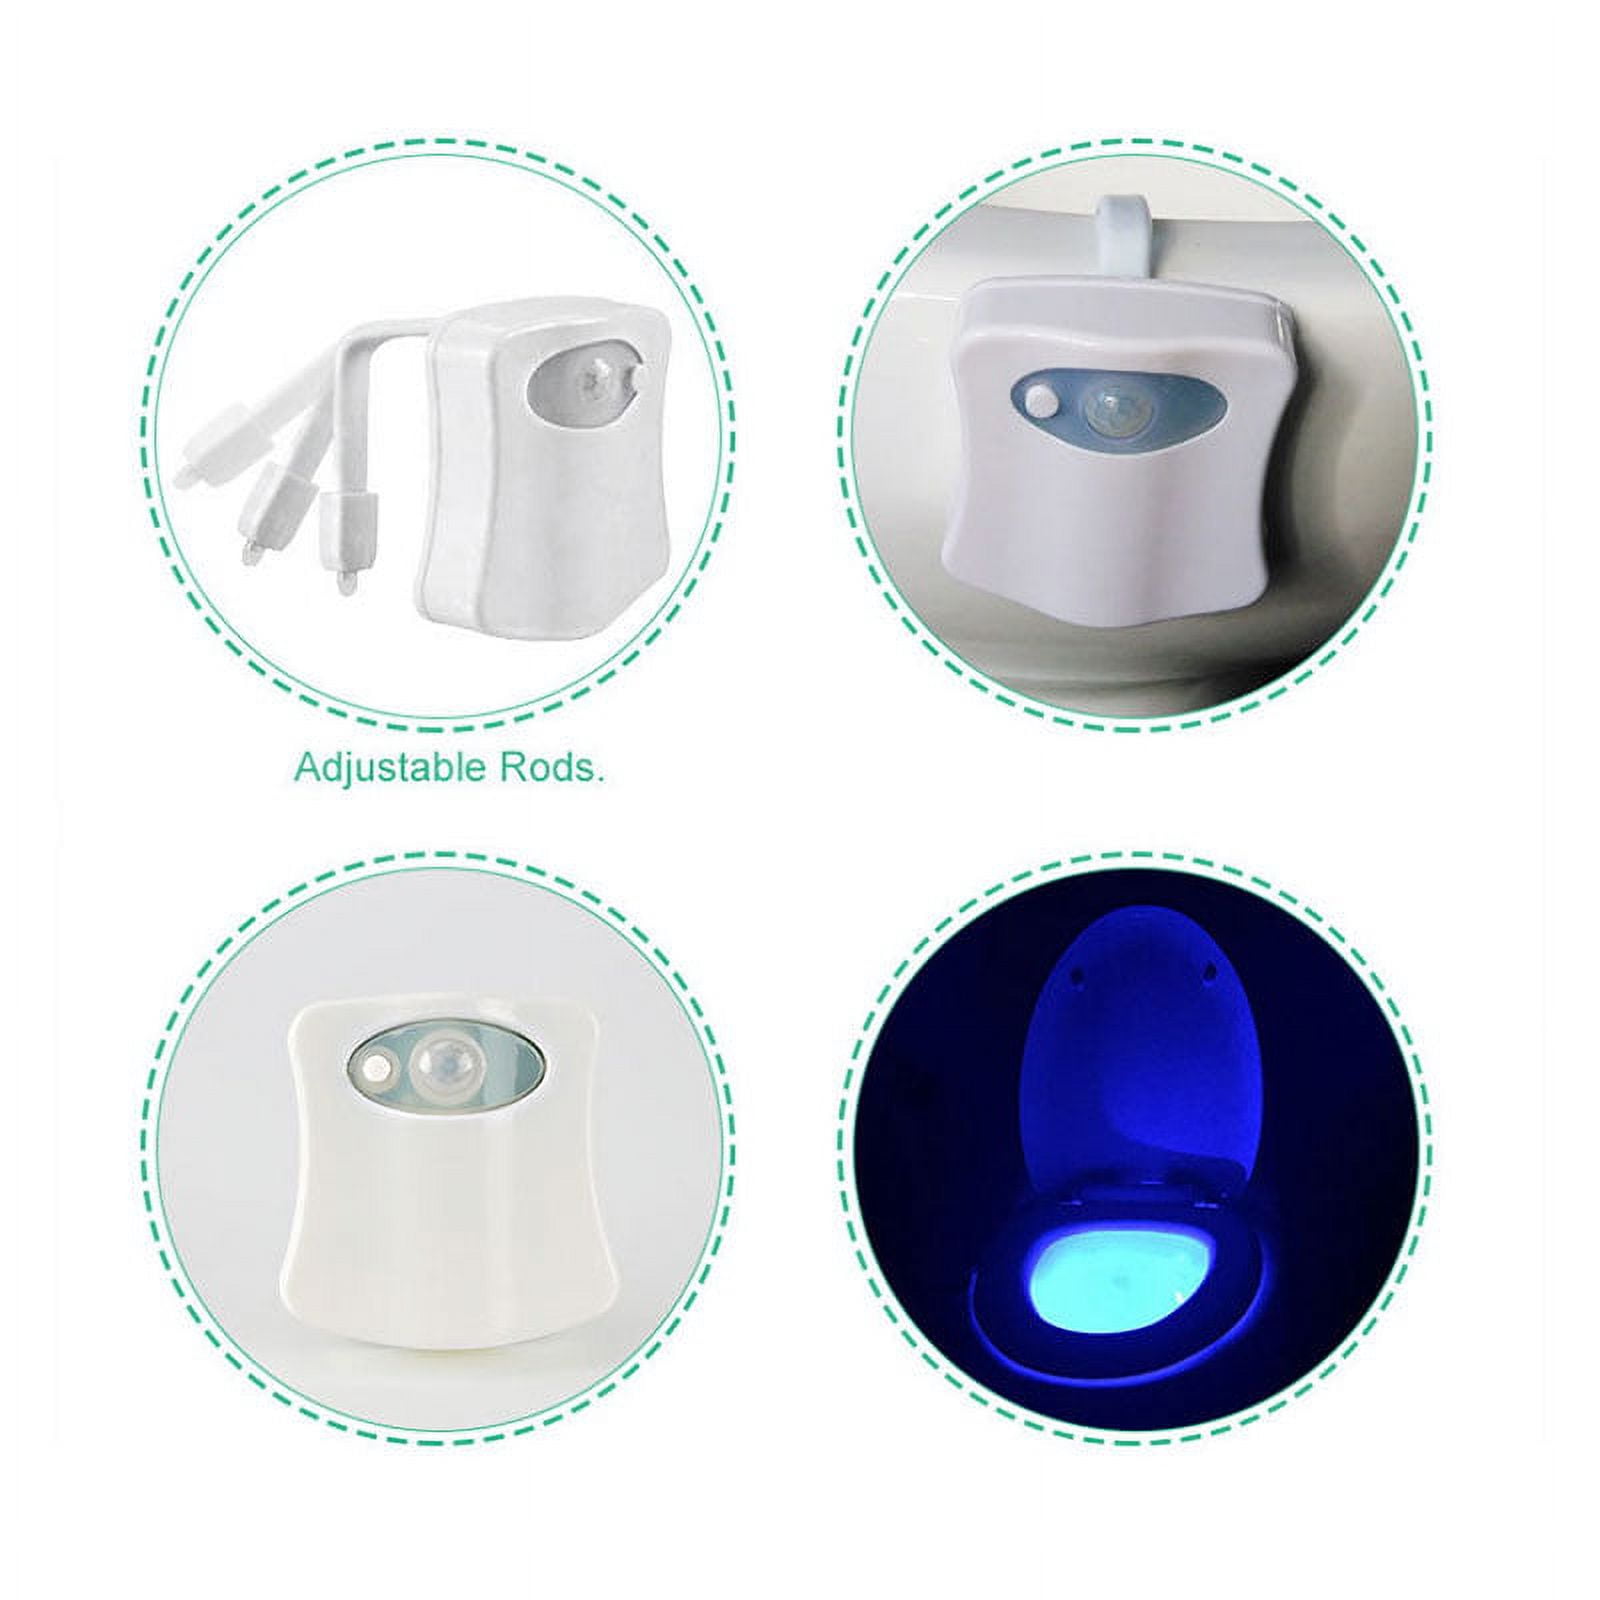 Toilet Night Light 8 Color LED Human Body Auto Motion Sensor